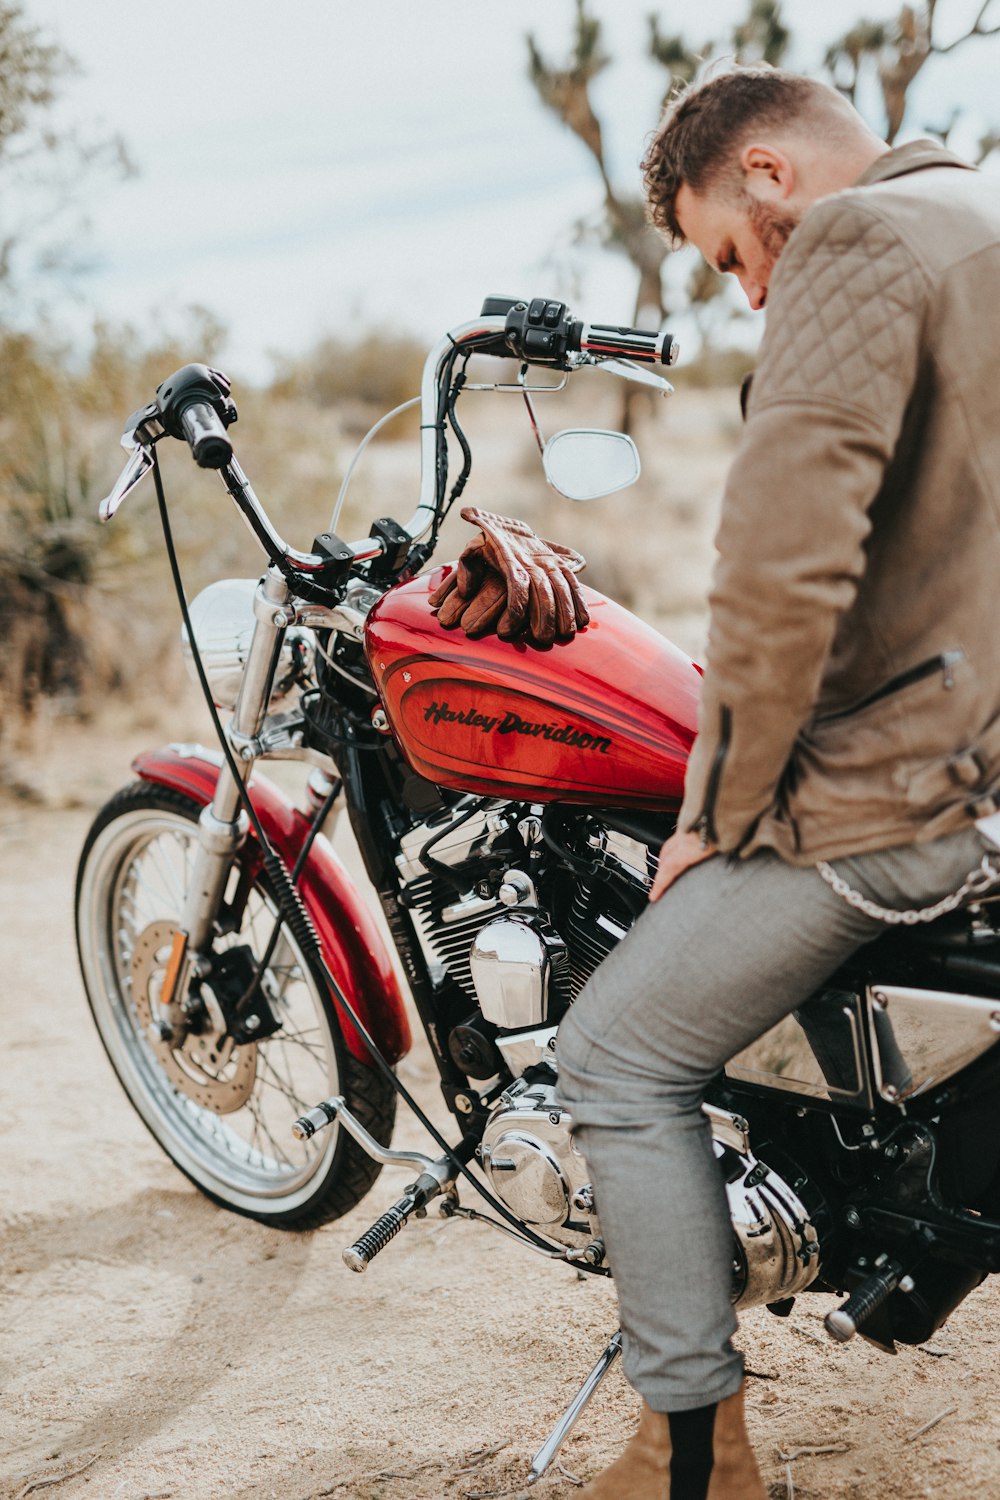 homem senta-se em motocicleta Harley-Davidson vermelha e preta durante o dia